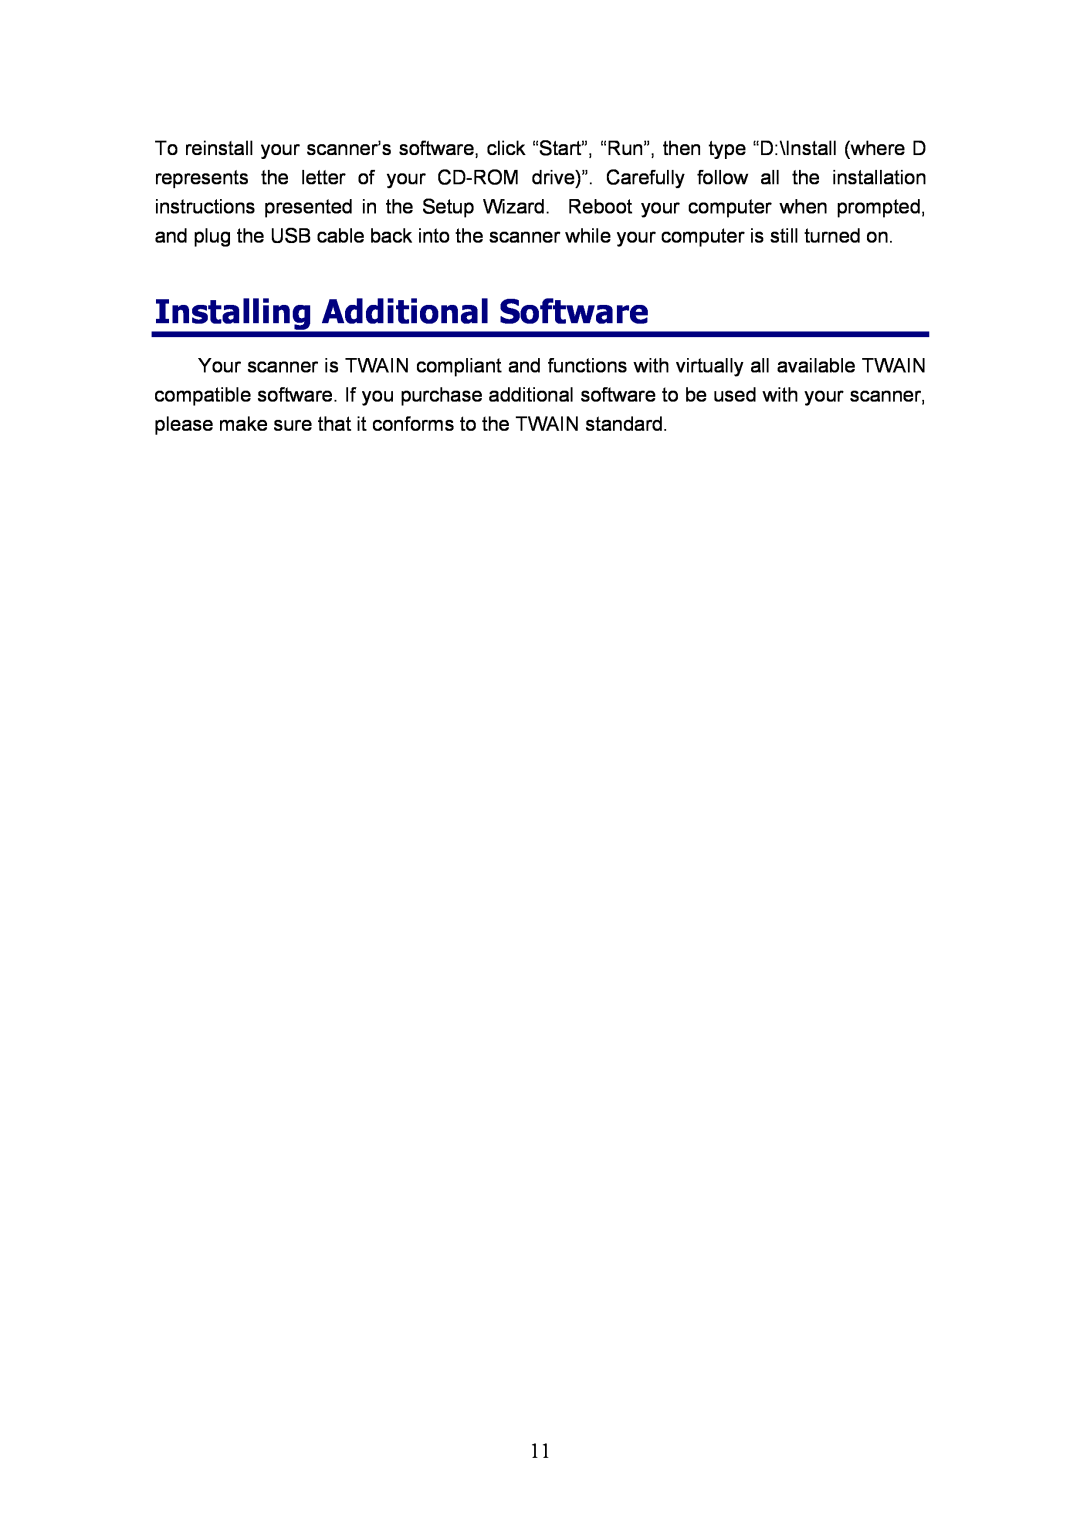 Plustek MobileOffice Scanner, D600 manual Installing Additional Software 